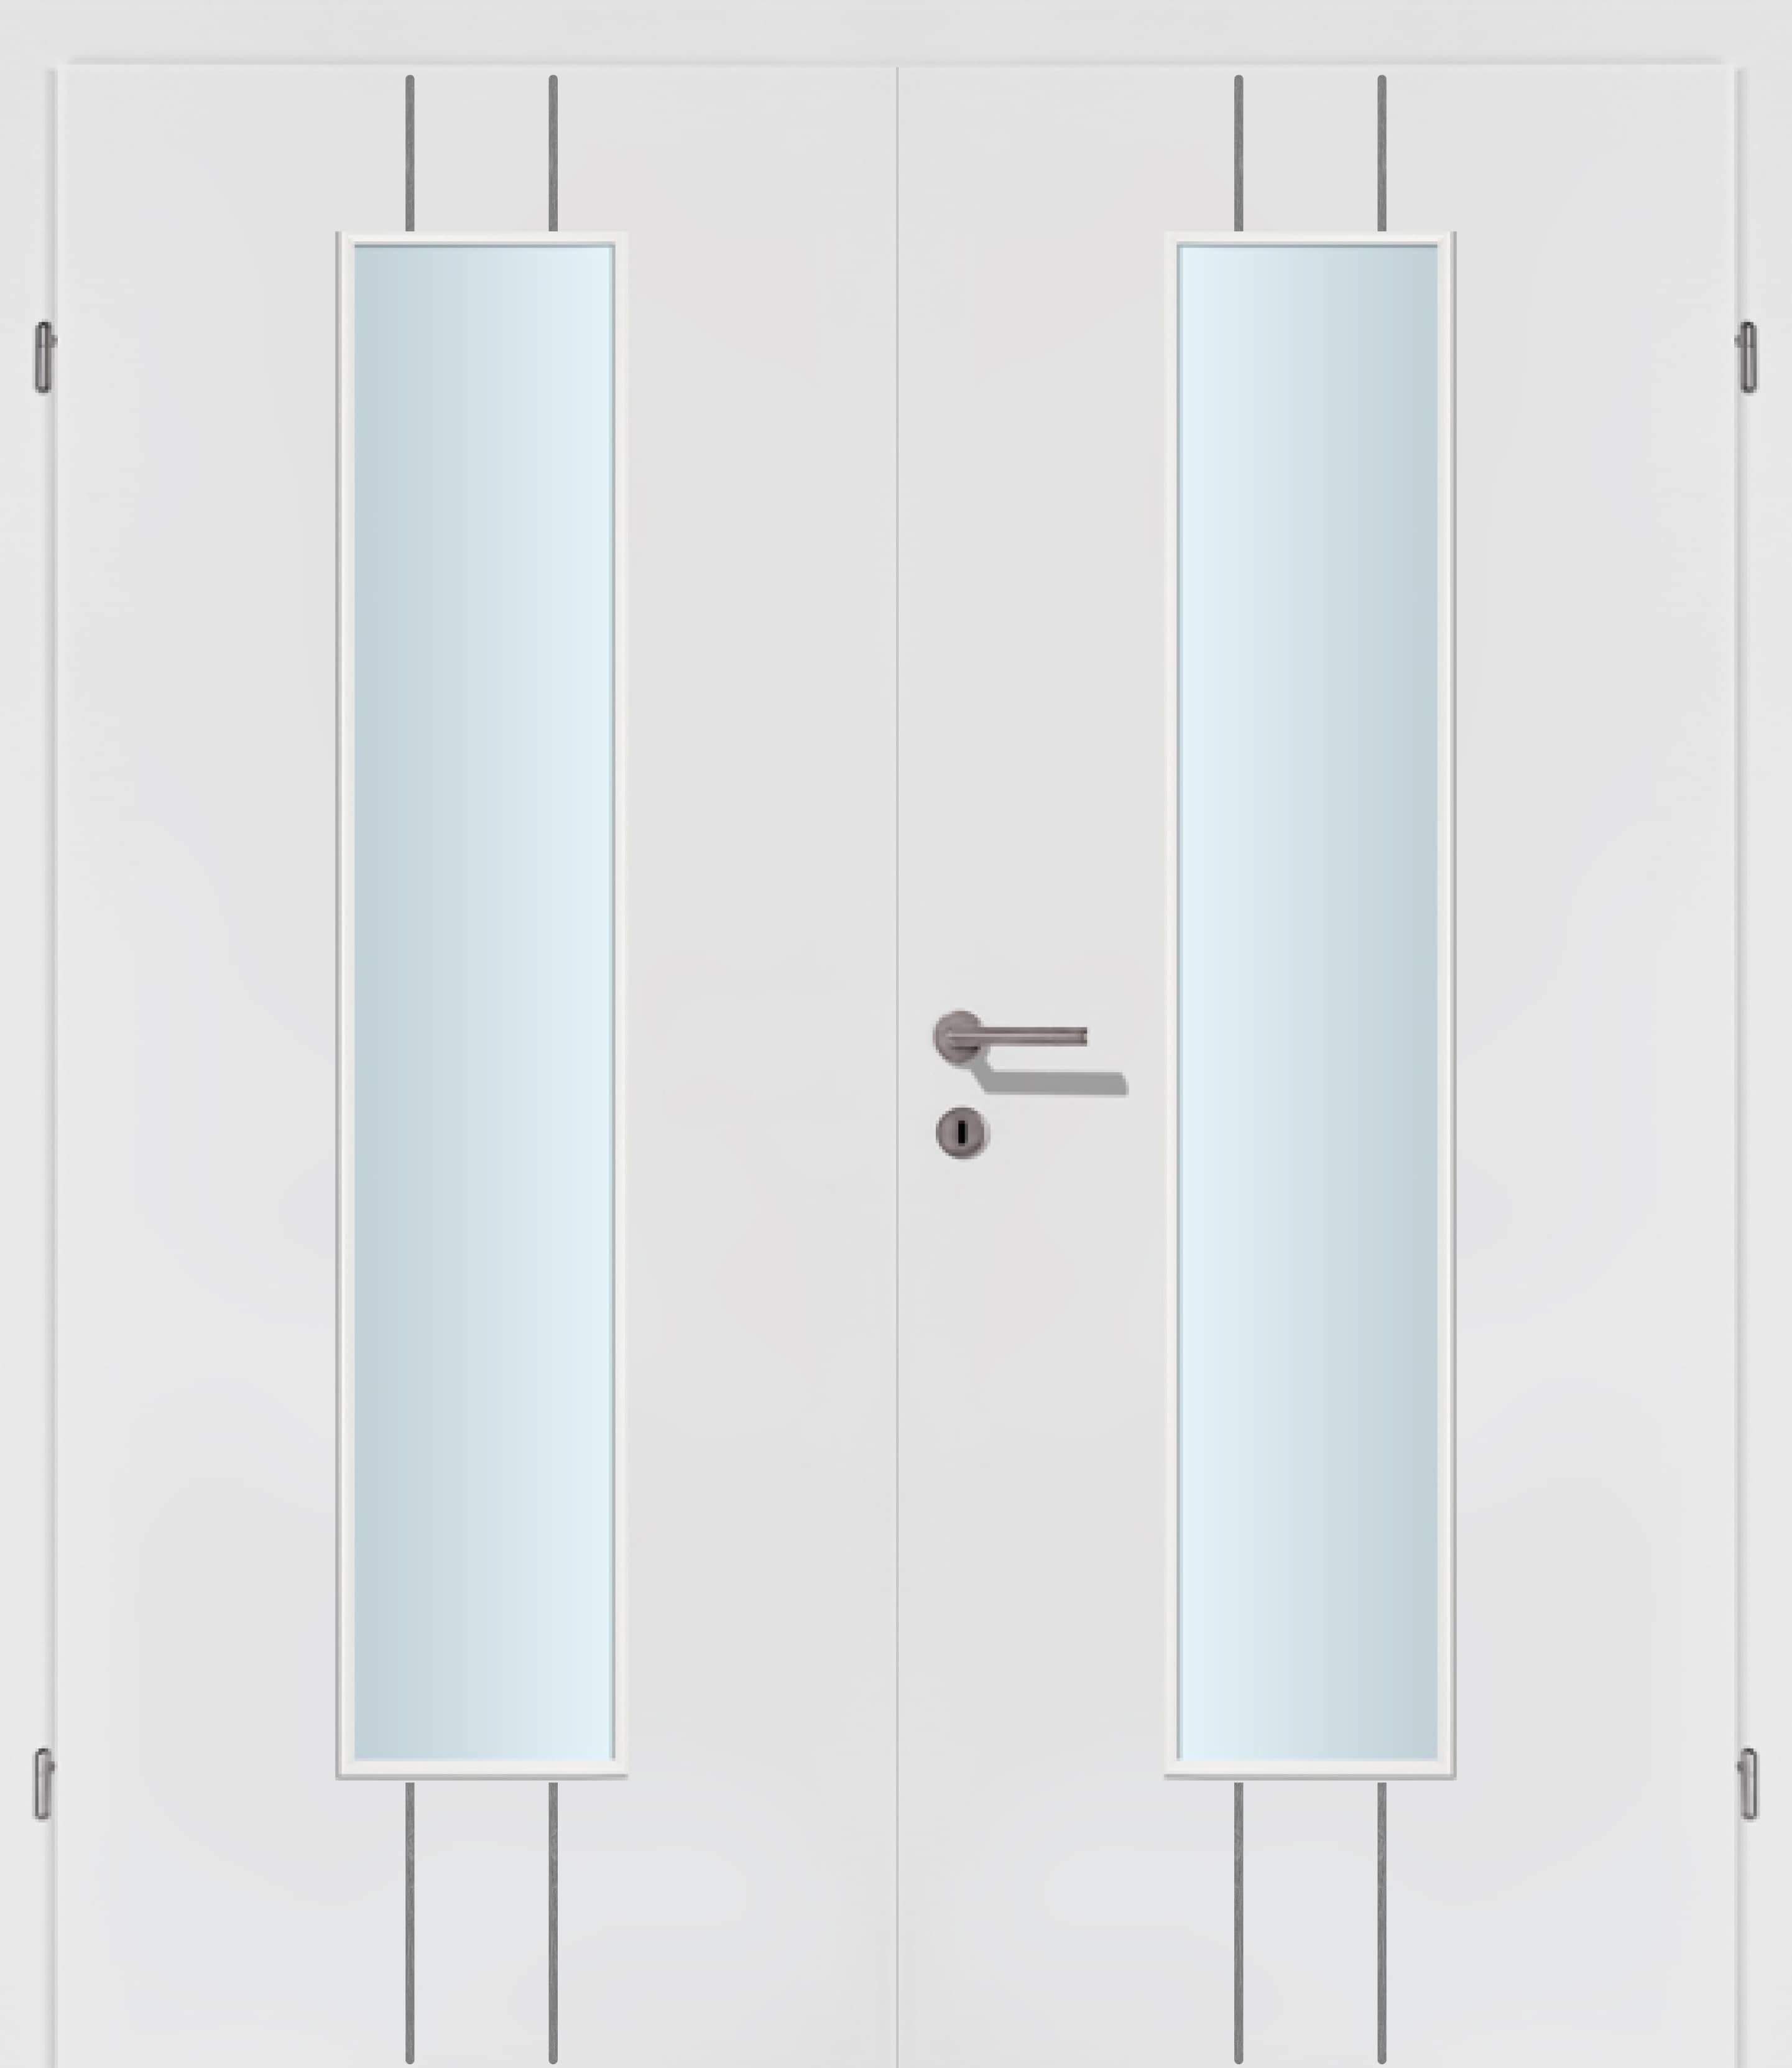 Selektion T23 Alu Effekt Lisenen weiss Innentür Inkl. Zarge (Türrahmen) Doppeltüre Inkl. Glaslichte EN Mittig